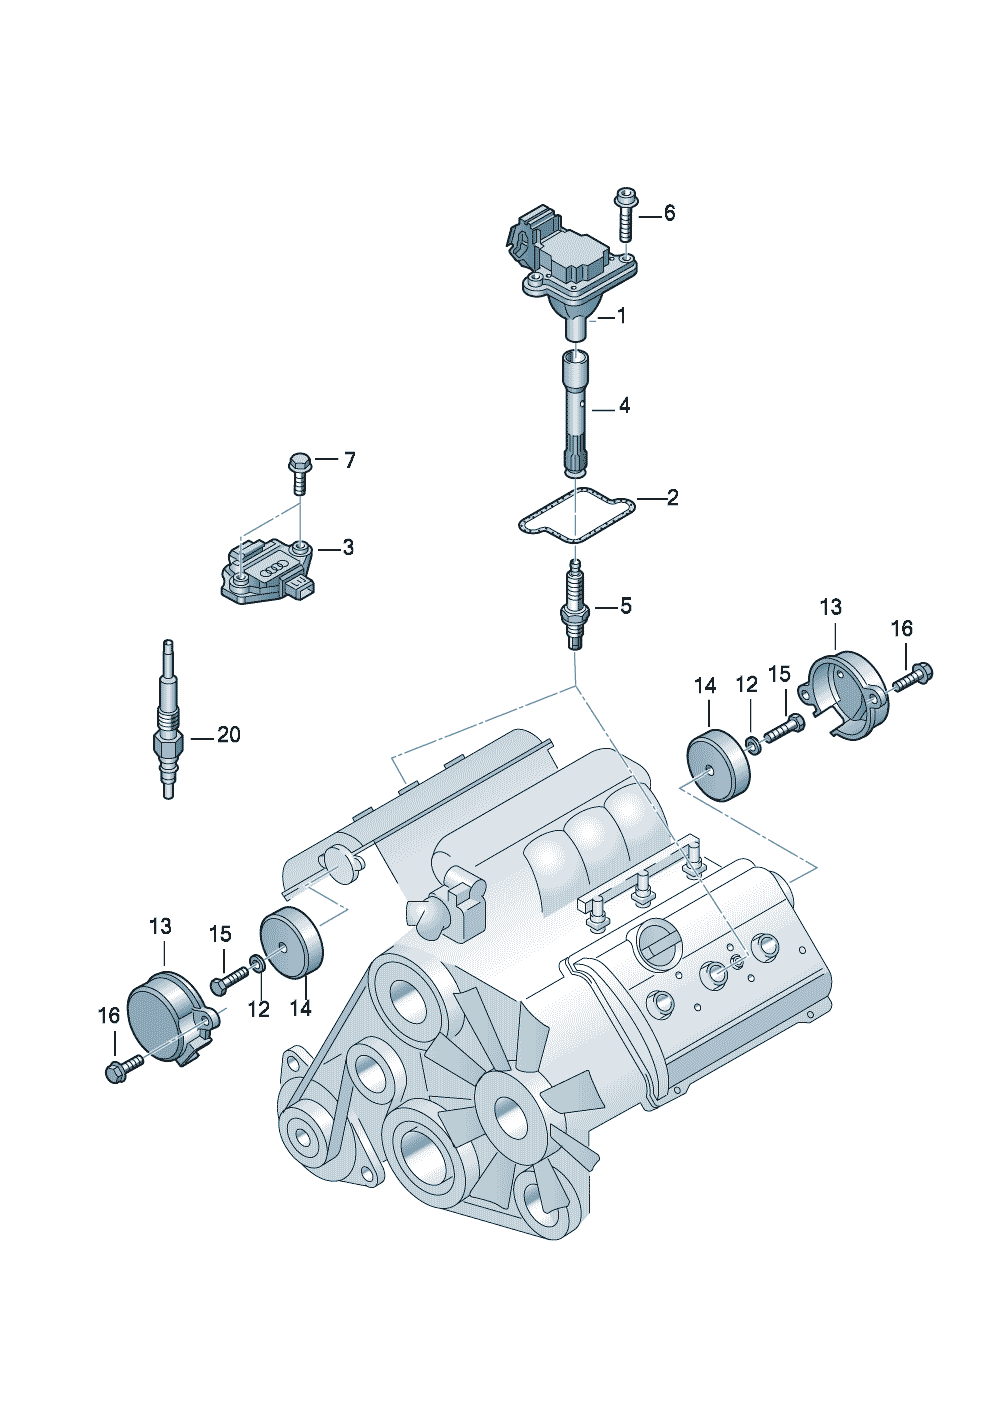 Hall sensor 2.7 Ltr. - Audi A6/Avant - a6